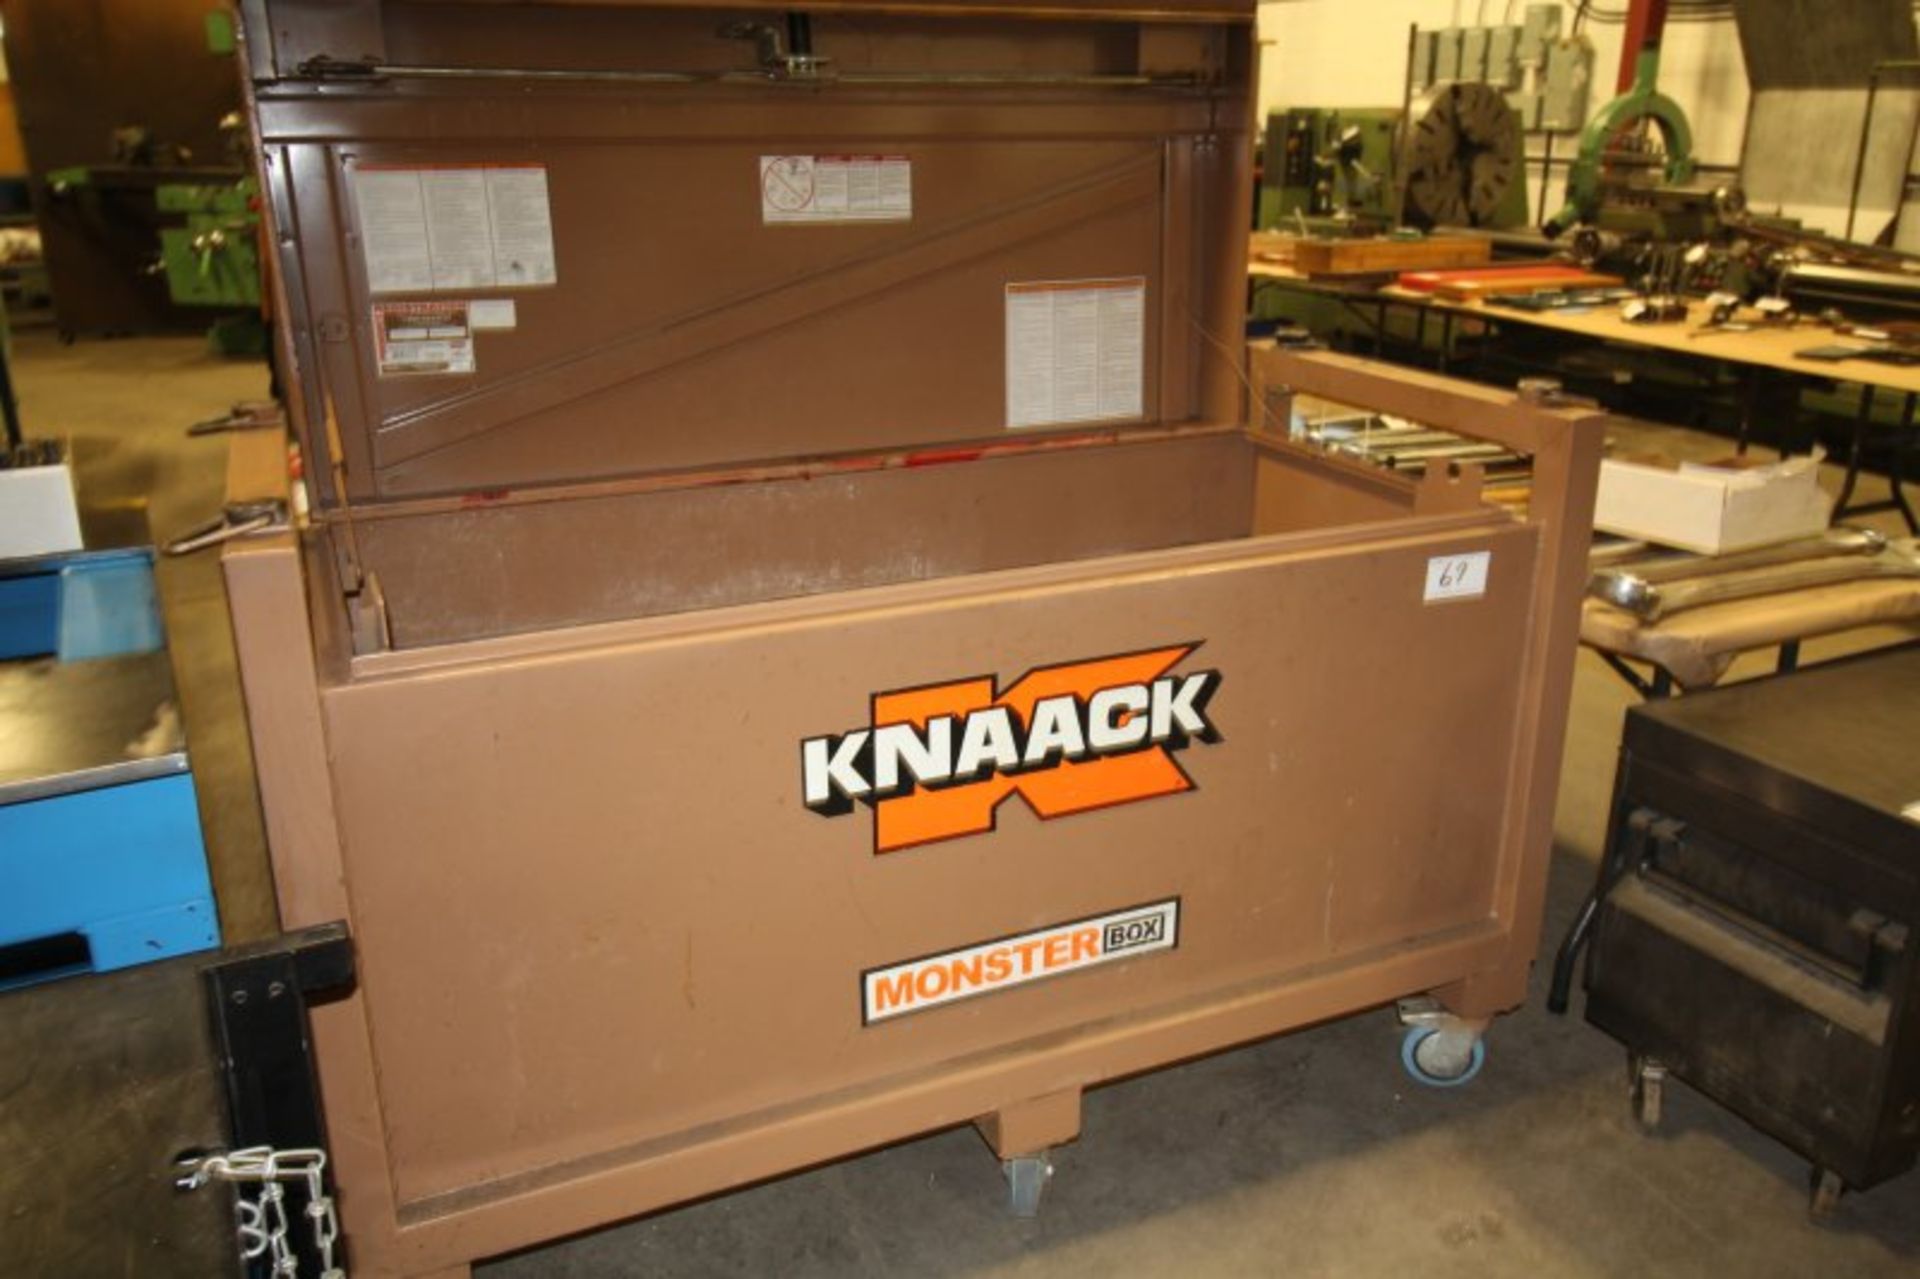 KNAACK MONSTER JOB BOX ON CASTORS